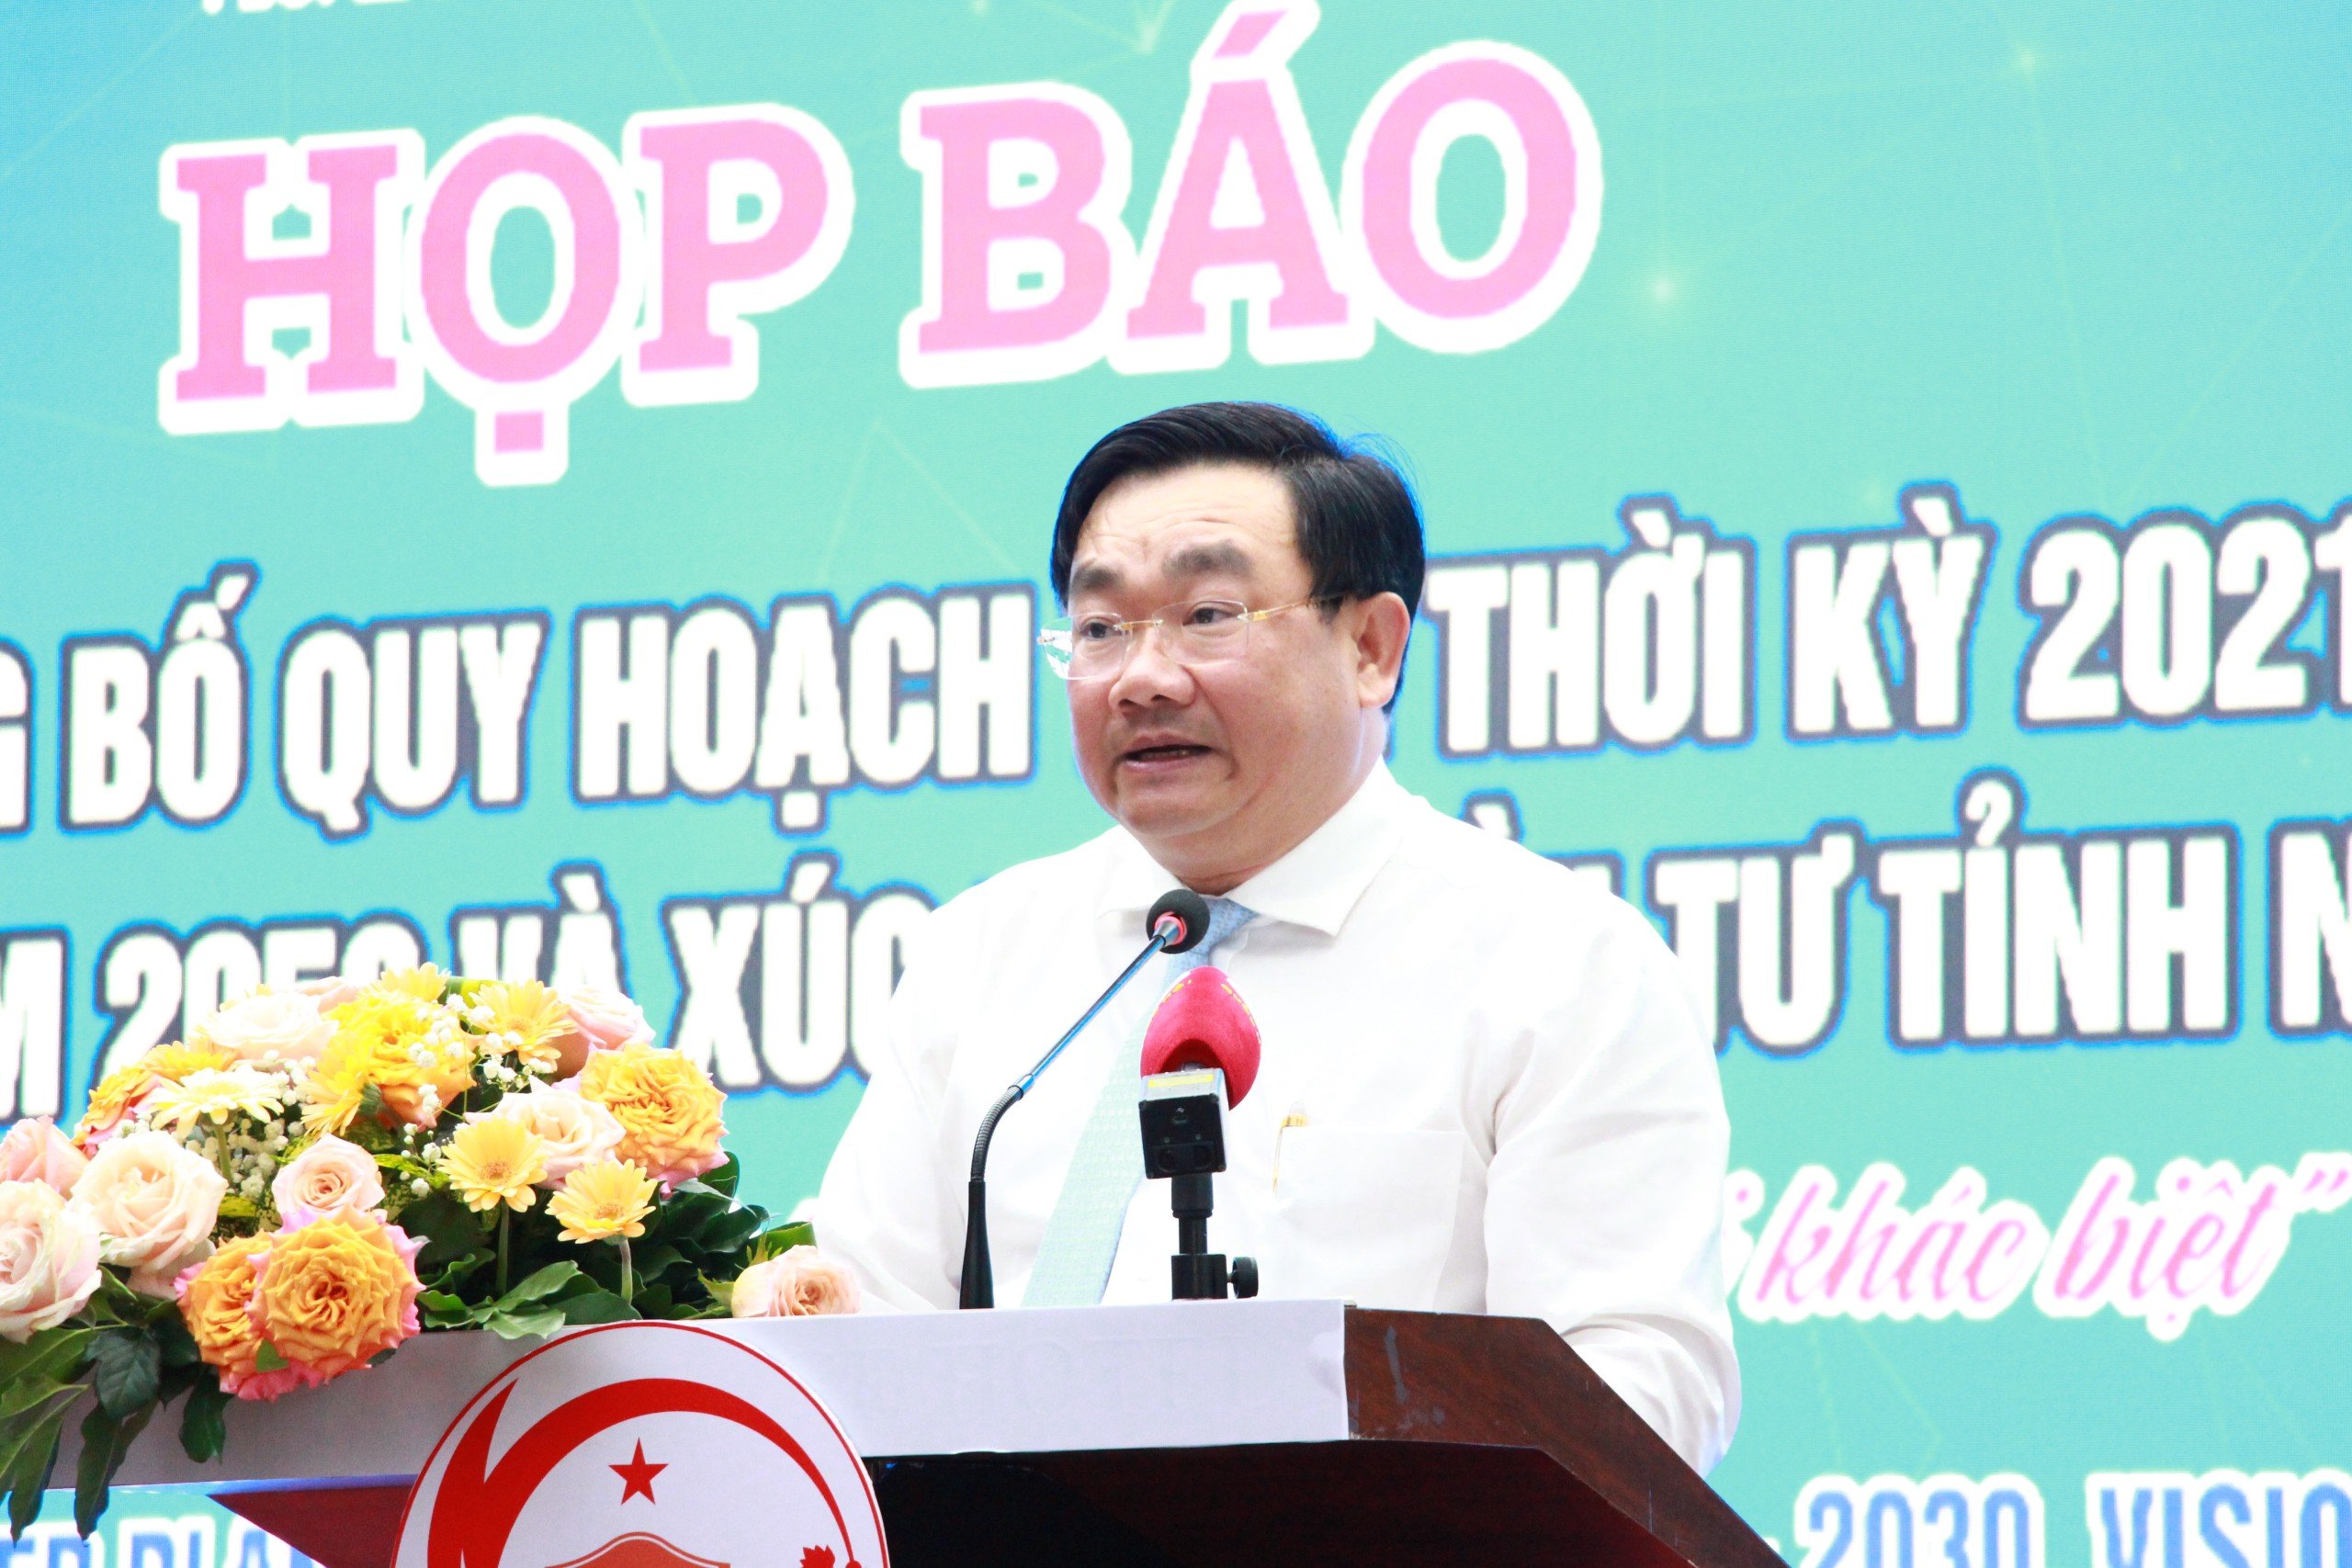 Kinh tế vĩ mô - Ninh Thuận: Quy hoạch 2 mũi nhọn phát triển kinh tế